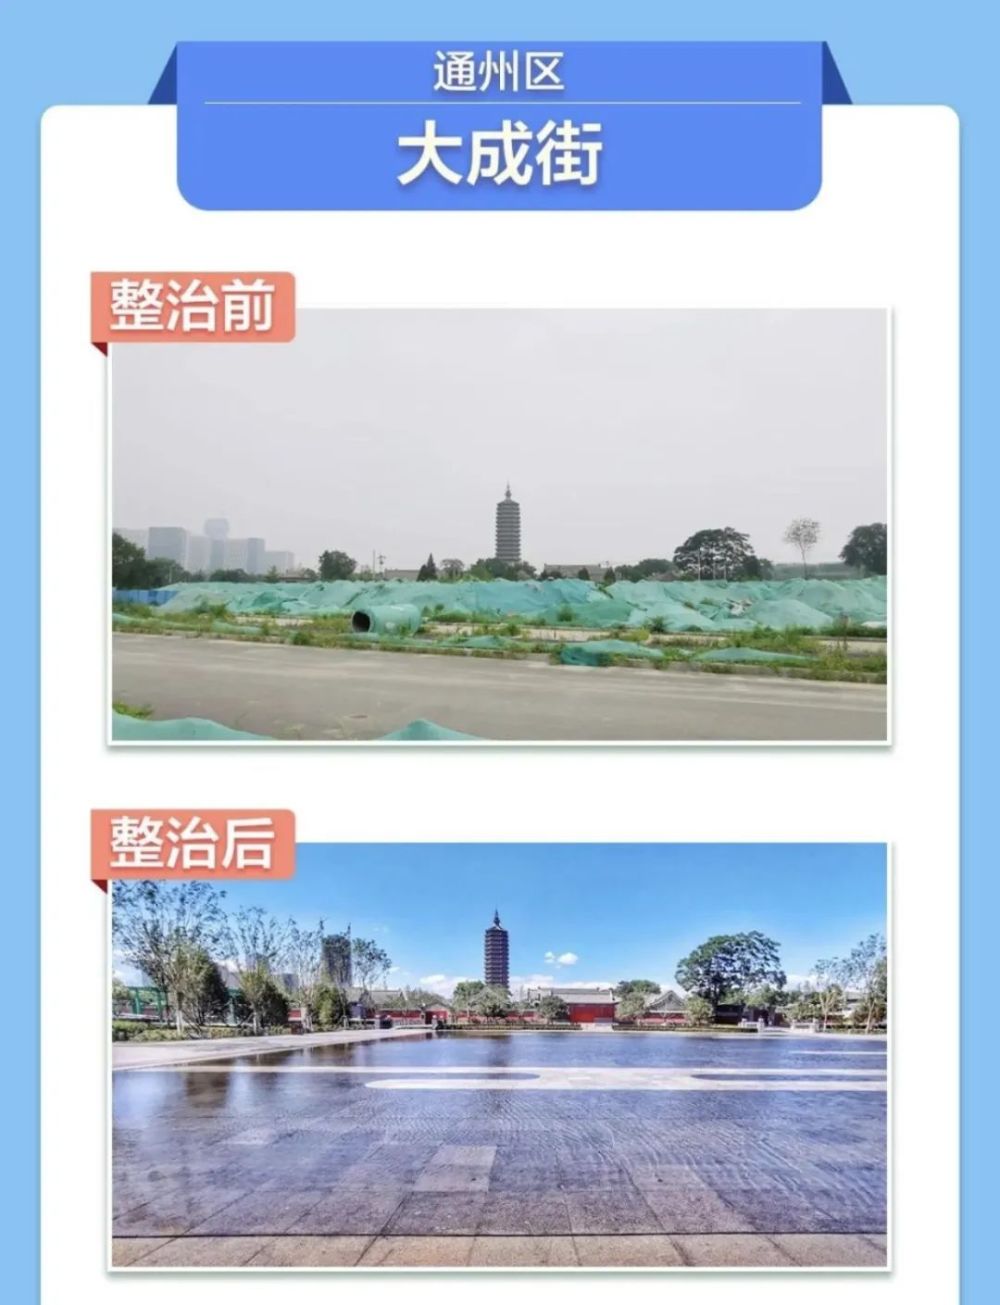 守护北京大兴的蓝天地绿、水清食安活动资讯网